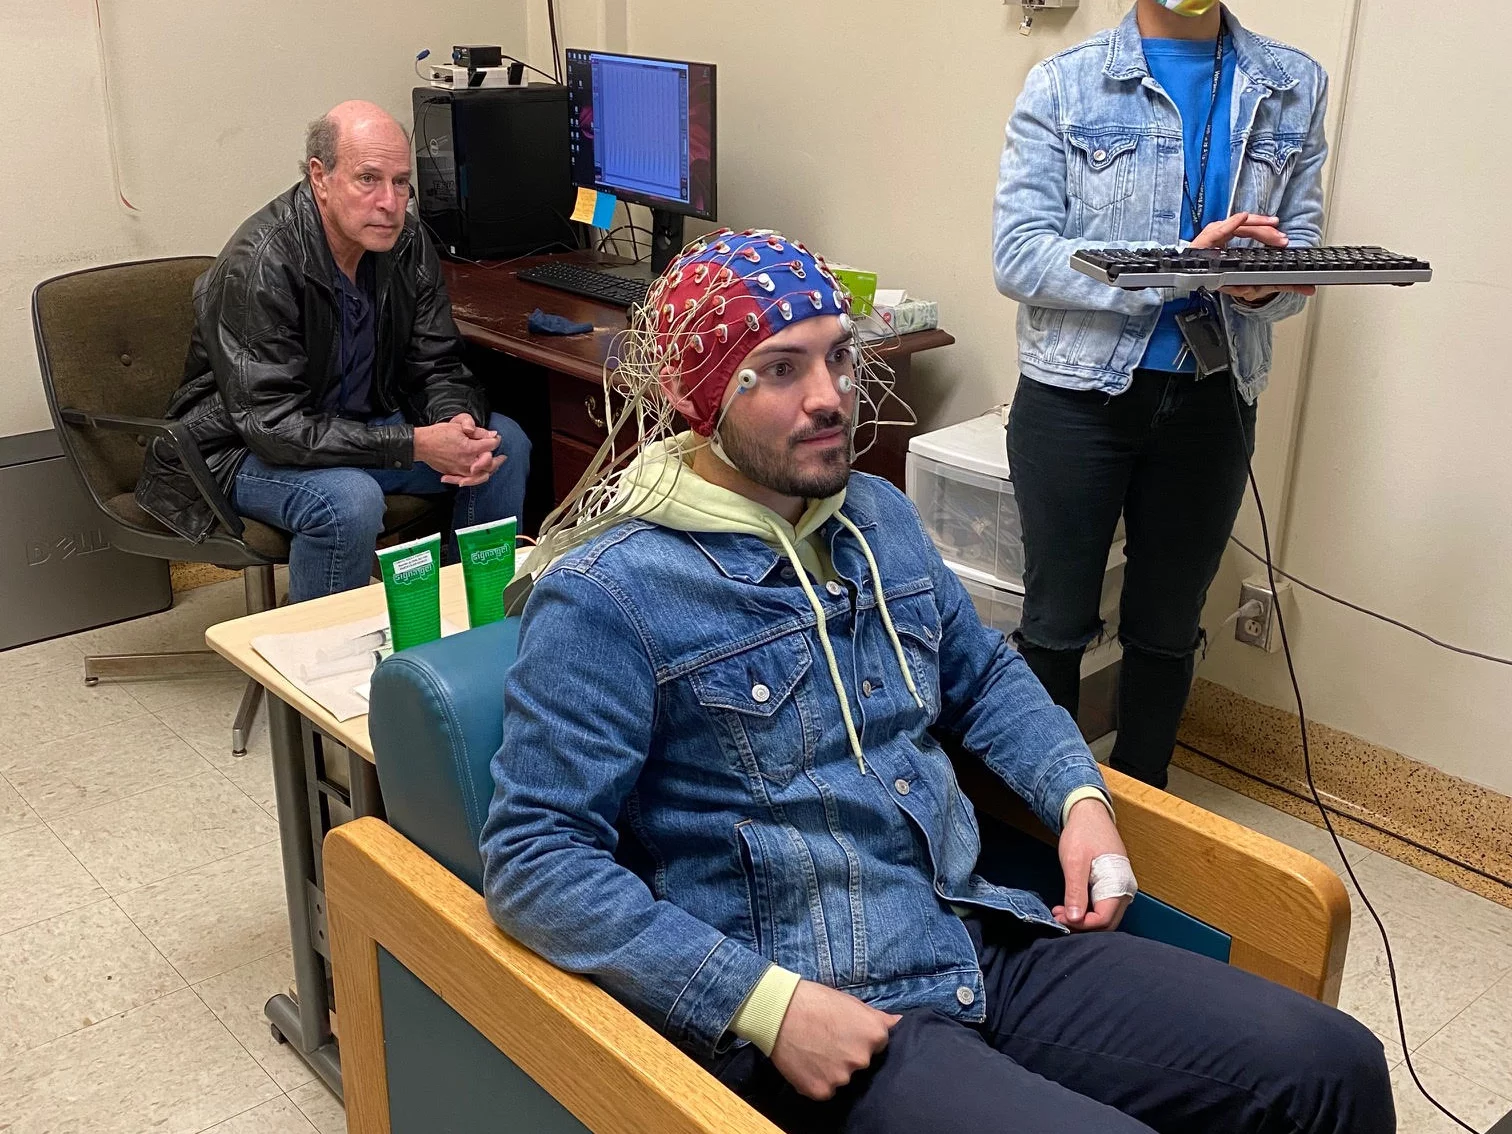 EEG Room in Action